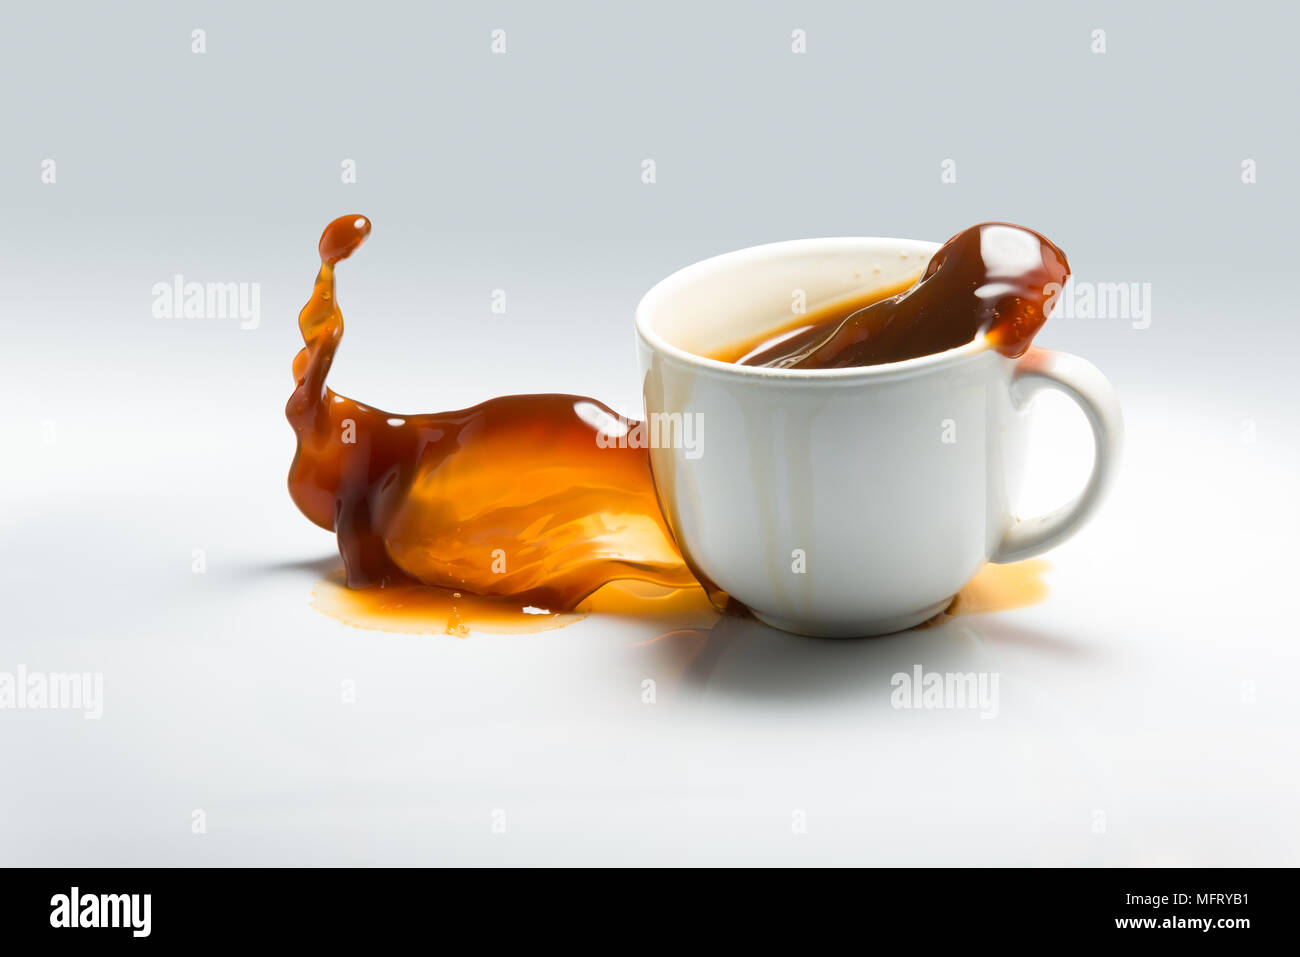 La caduta e la fuoriuscita di una tazza di caffè contro uno sfondo bianco Foto Stock